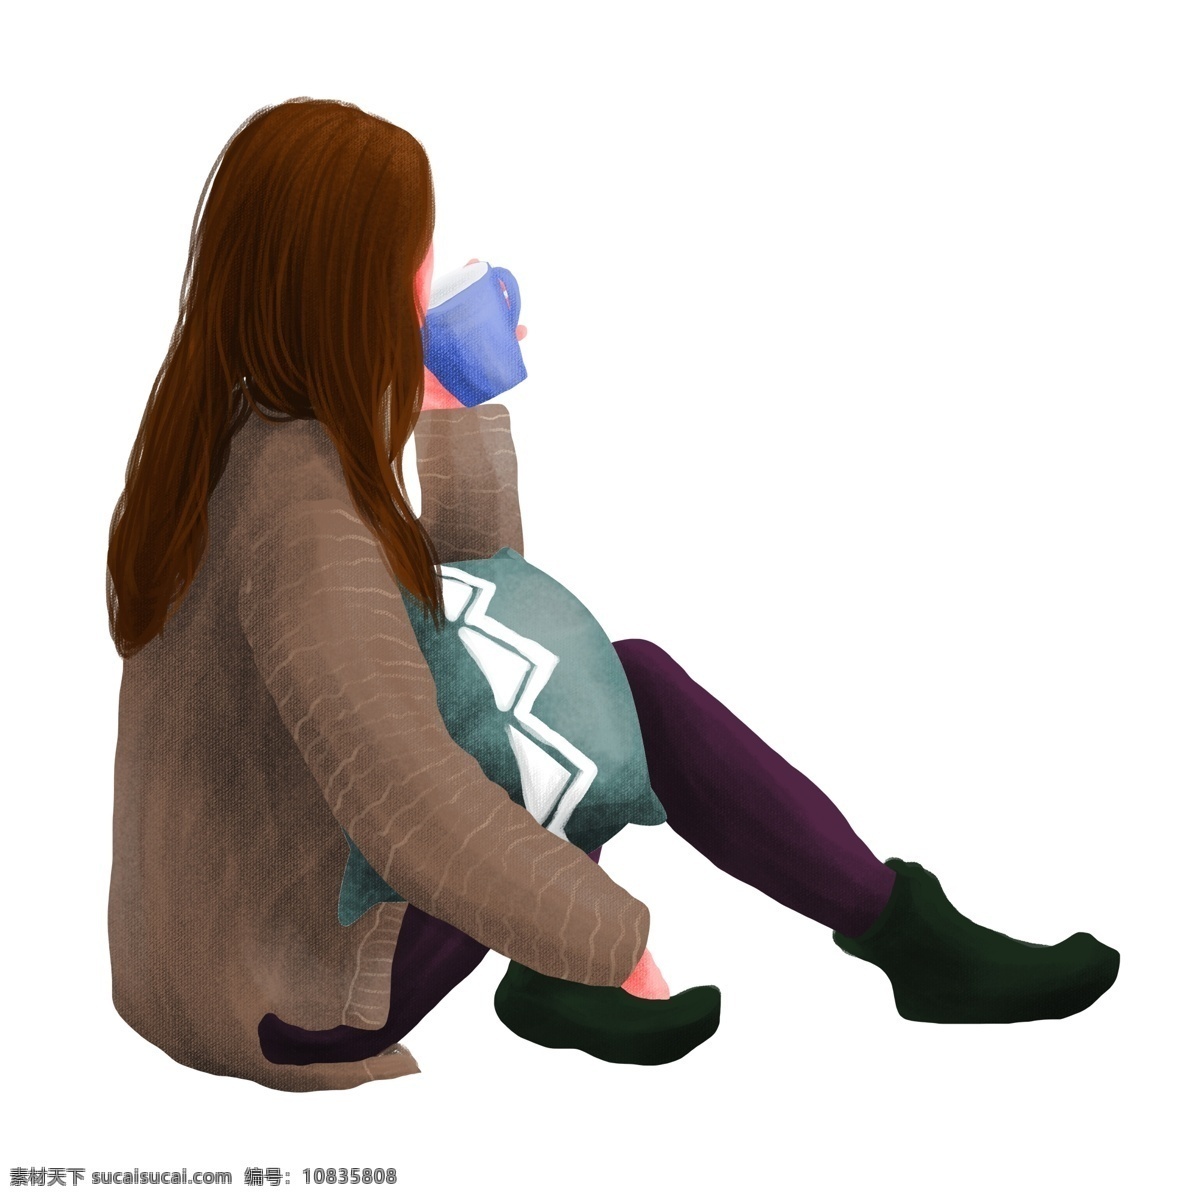 简约 女孩 坐在 地上 喝水 原创 元素 卡通 设计元素 毛衣 休息 原创元素